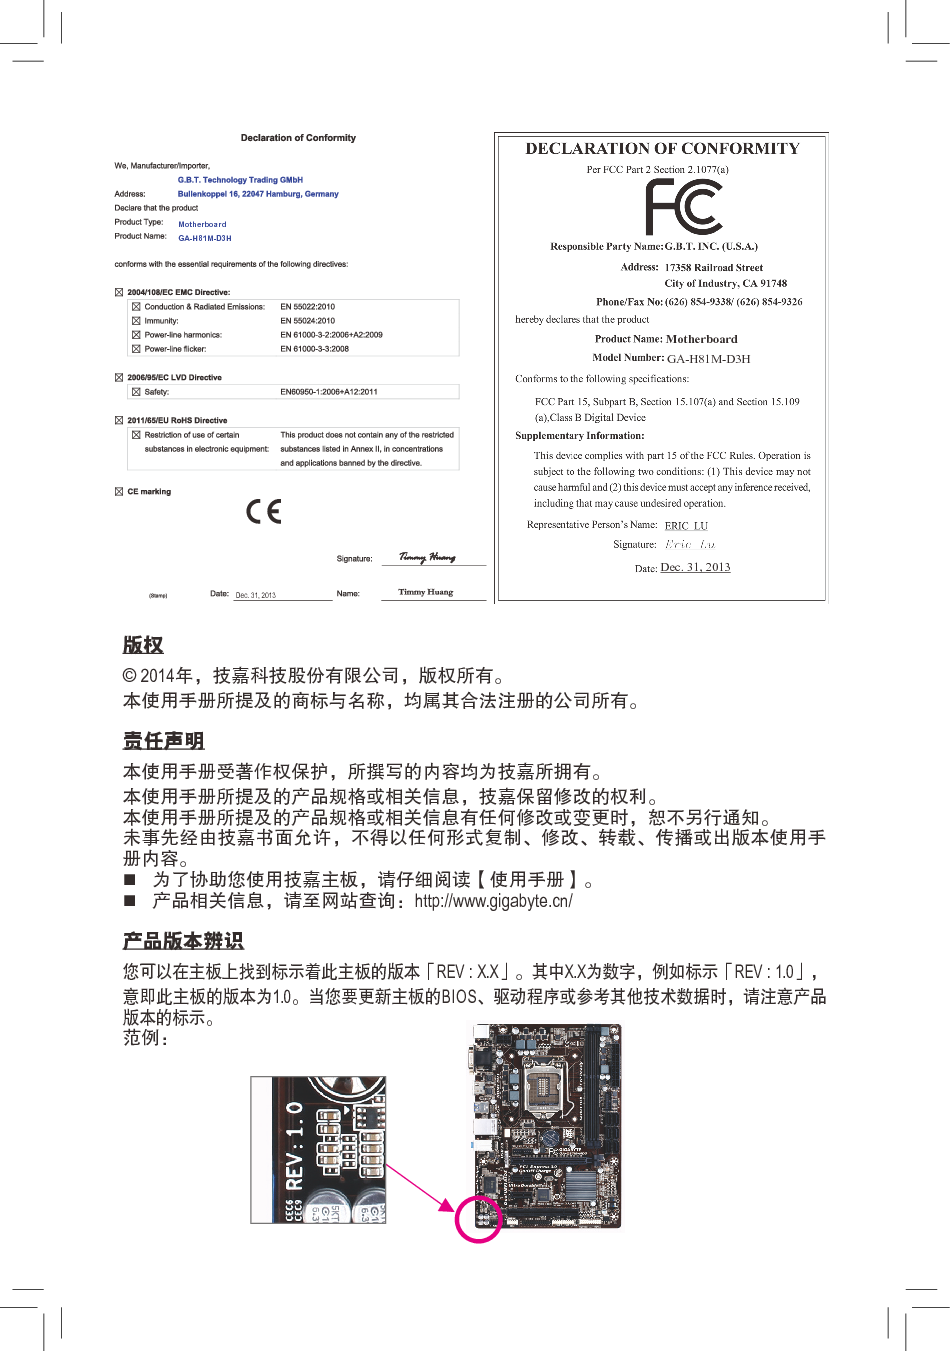 技嘉 Gigabyte GA-H81M-D3H 使用手册 第1页